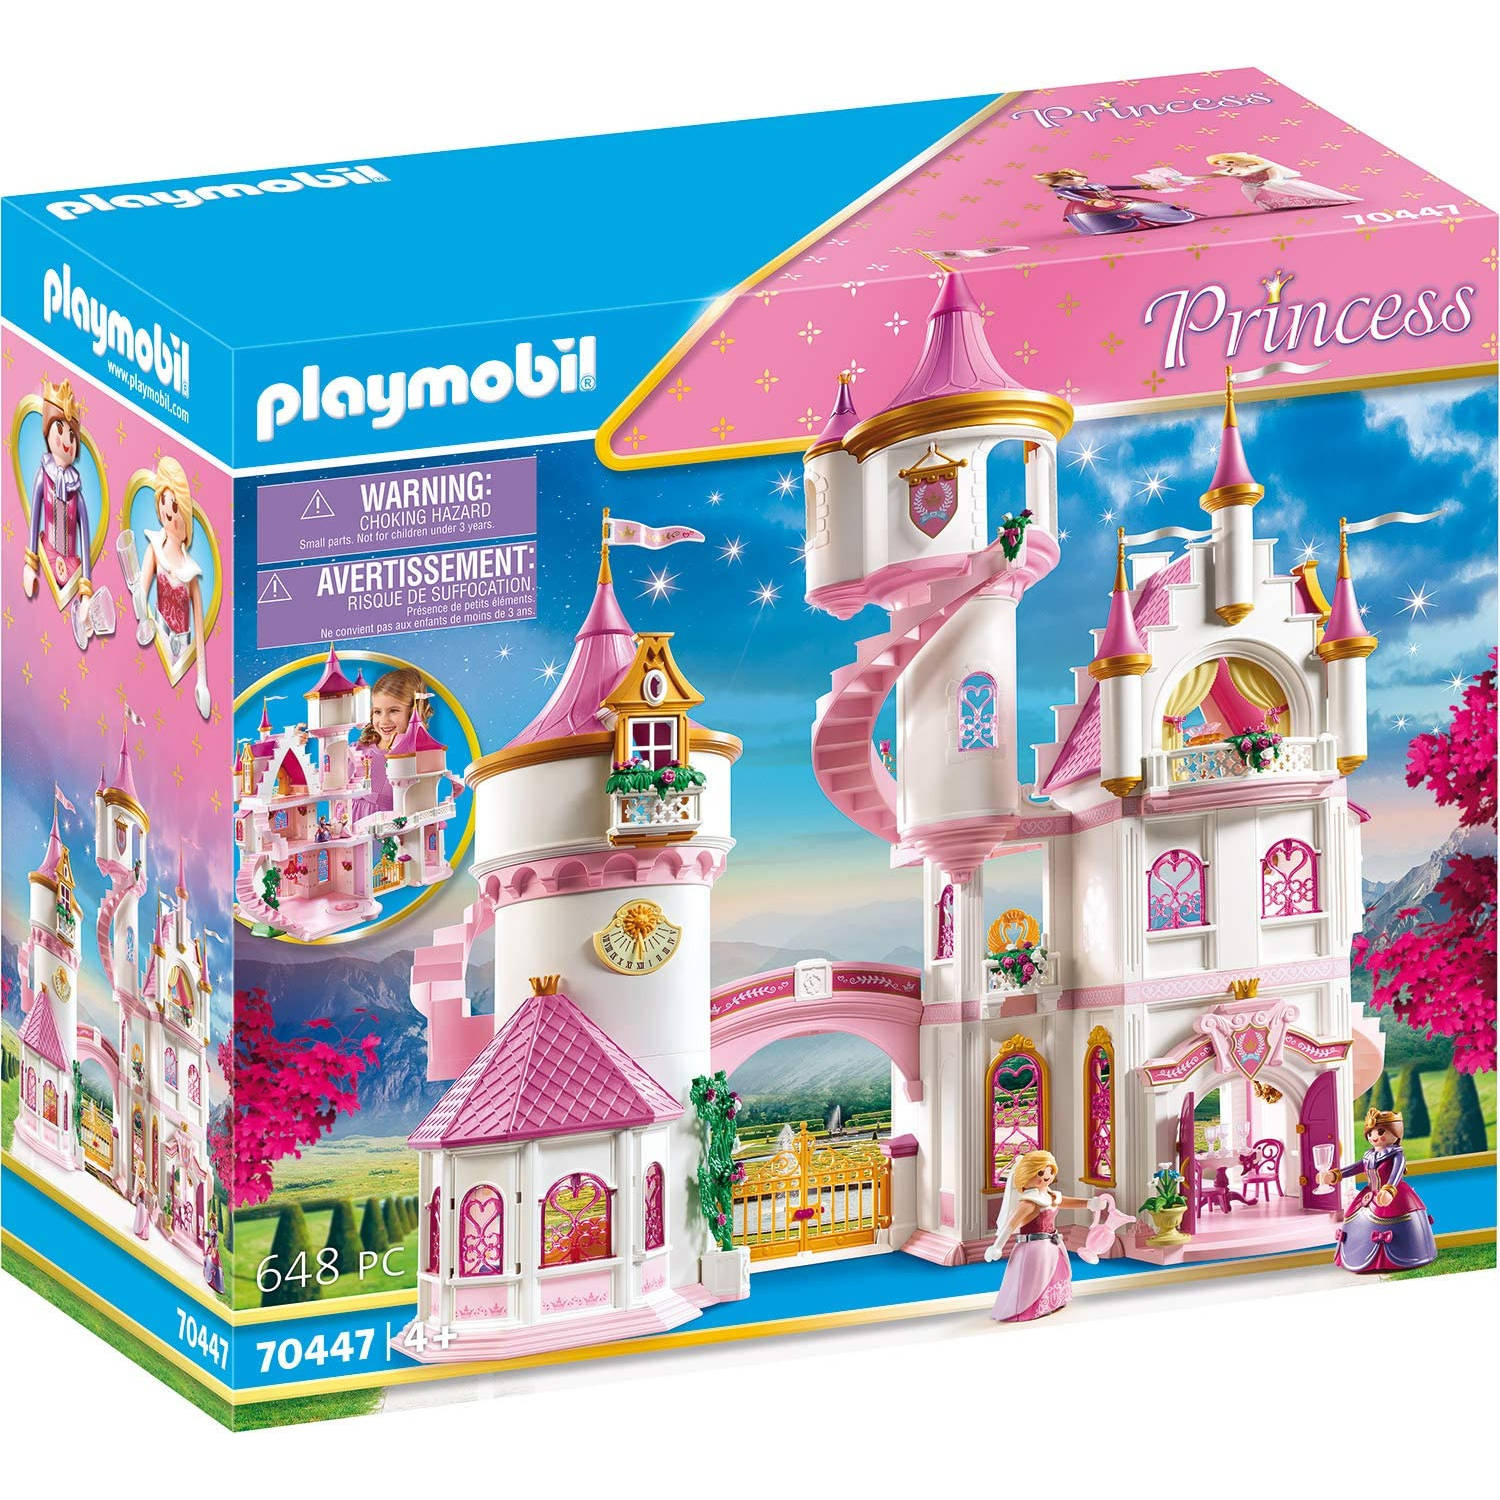 PLAYMOBIL Princess Groot Prinsessenkasteel (70447)